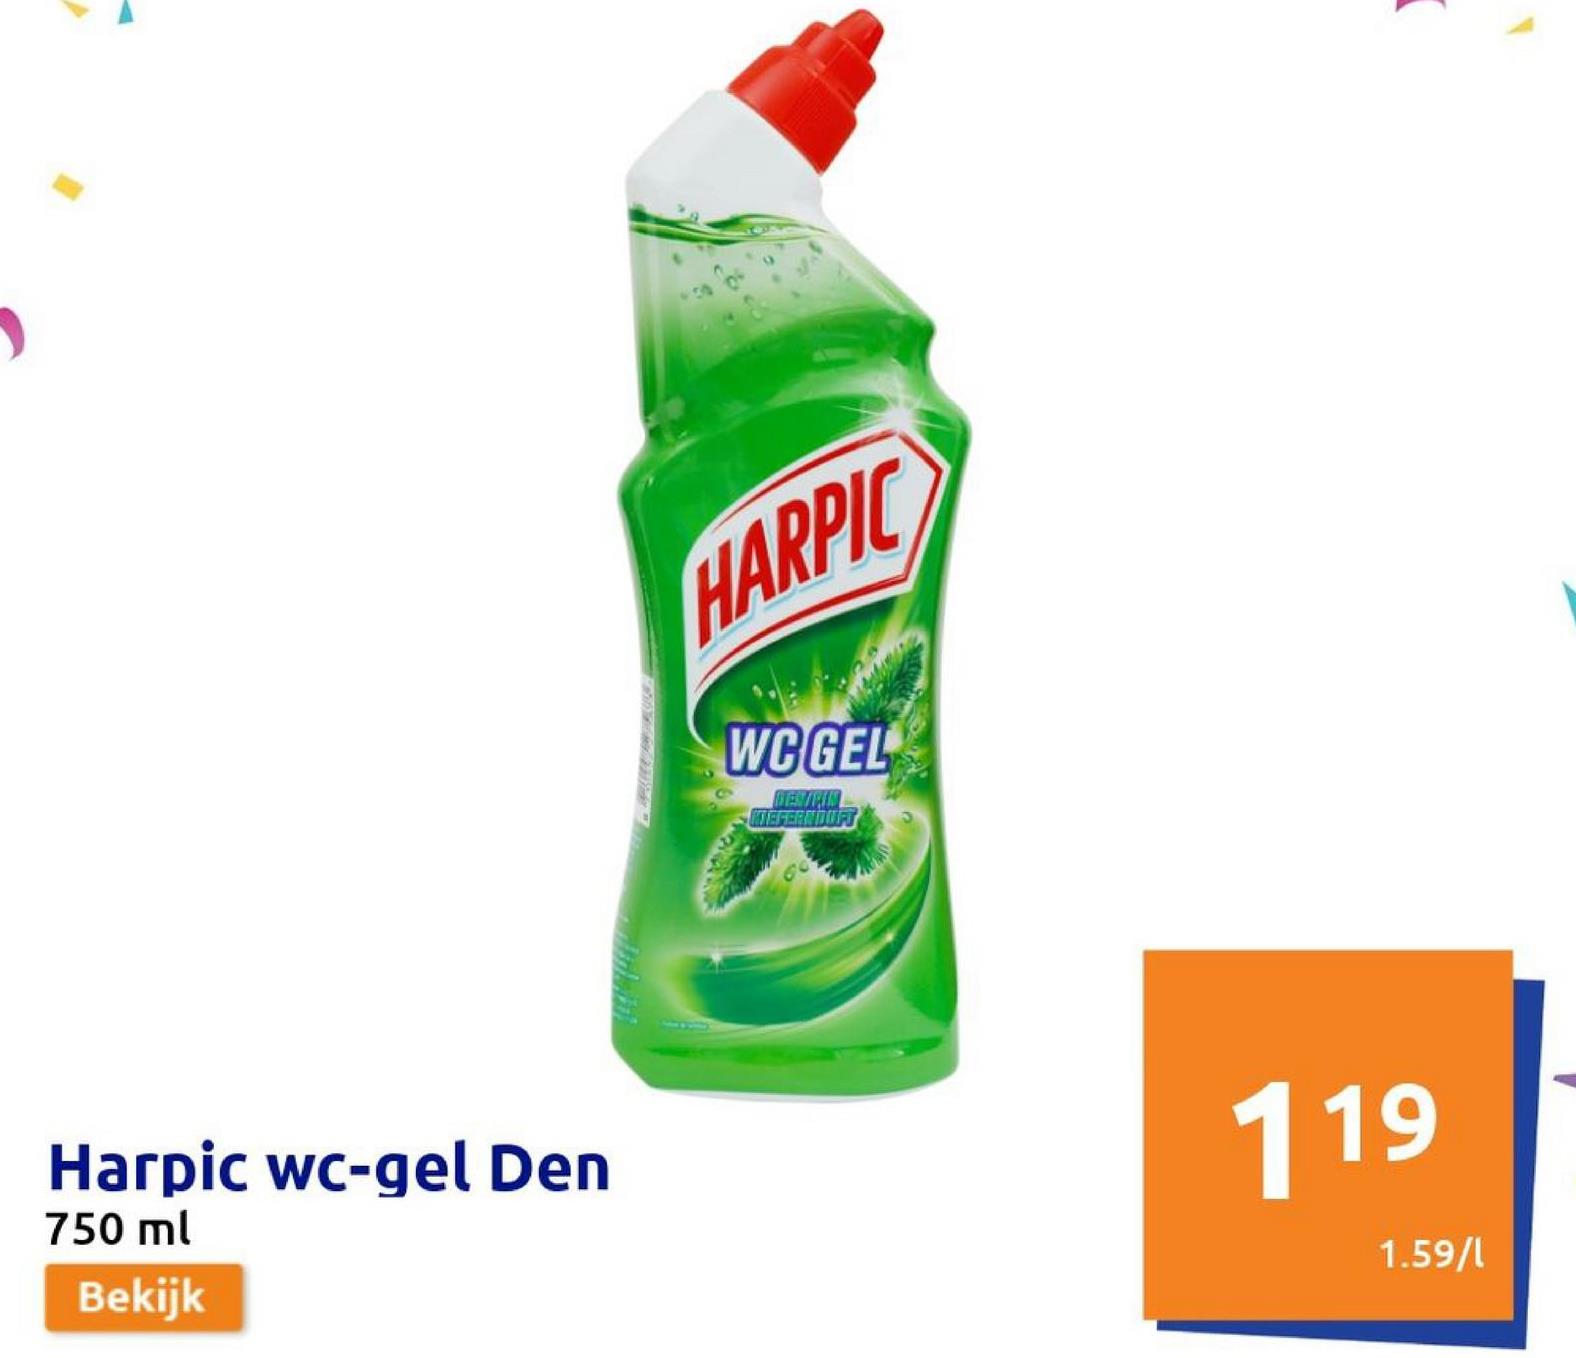 Harpic wc-gel Den
750 ml
Bekijk
HARPIC
WCGEL
KIEFERNDUFT
(
119
1.59/1